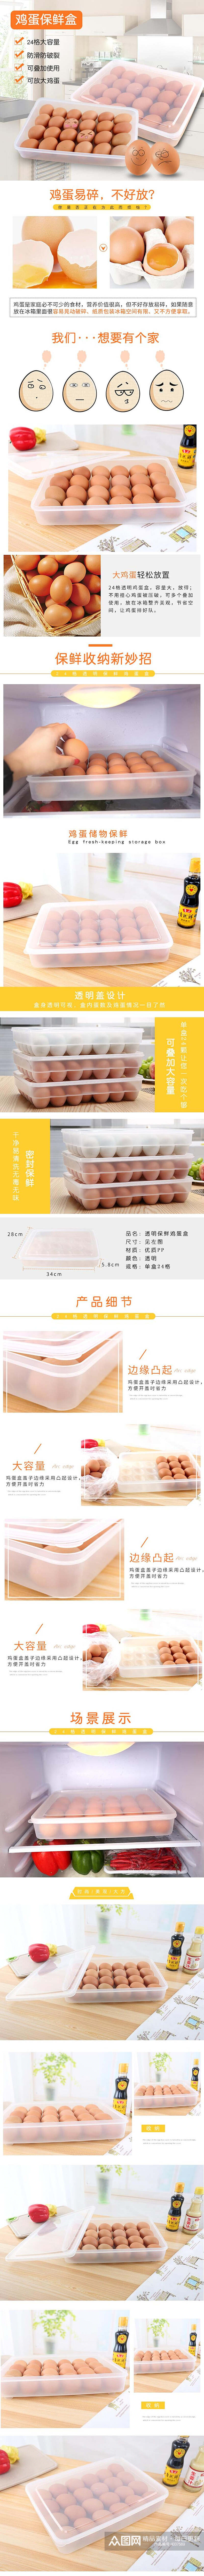 鸡蛋保鲜盒鸡蛋特产手机版详情页素材